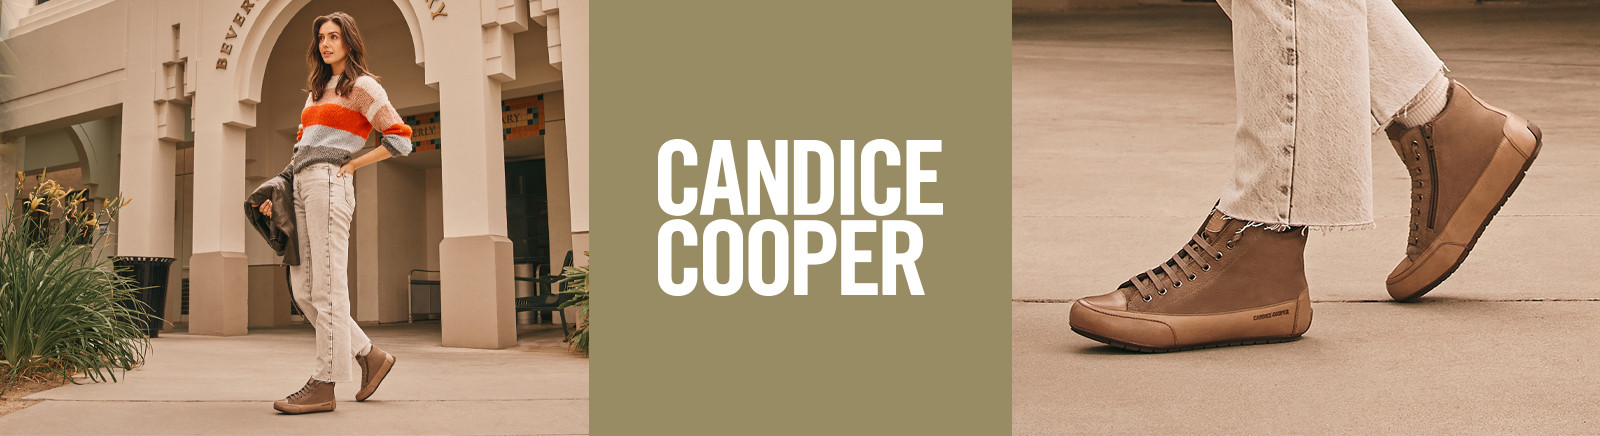 Candice Cooper Herrenschuhe online entdecken im Juppen Shop